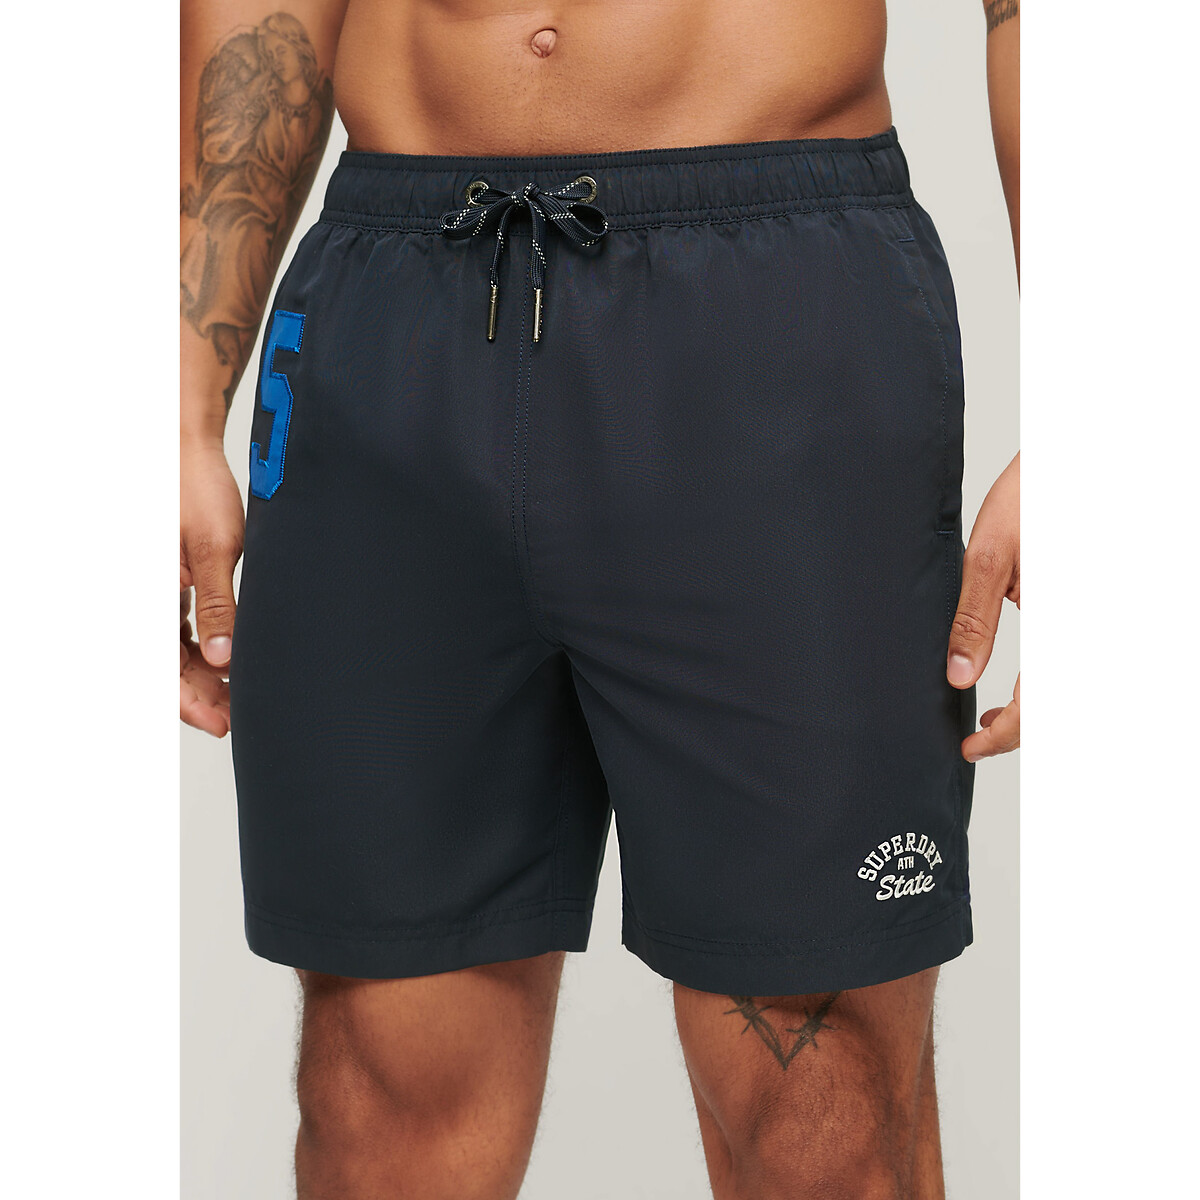 Image of Swim Shorts, 43cm/17"